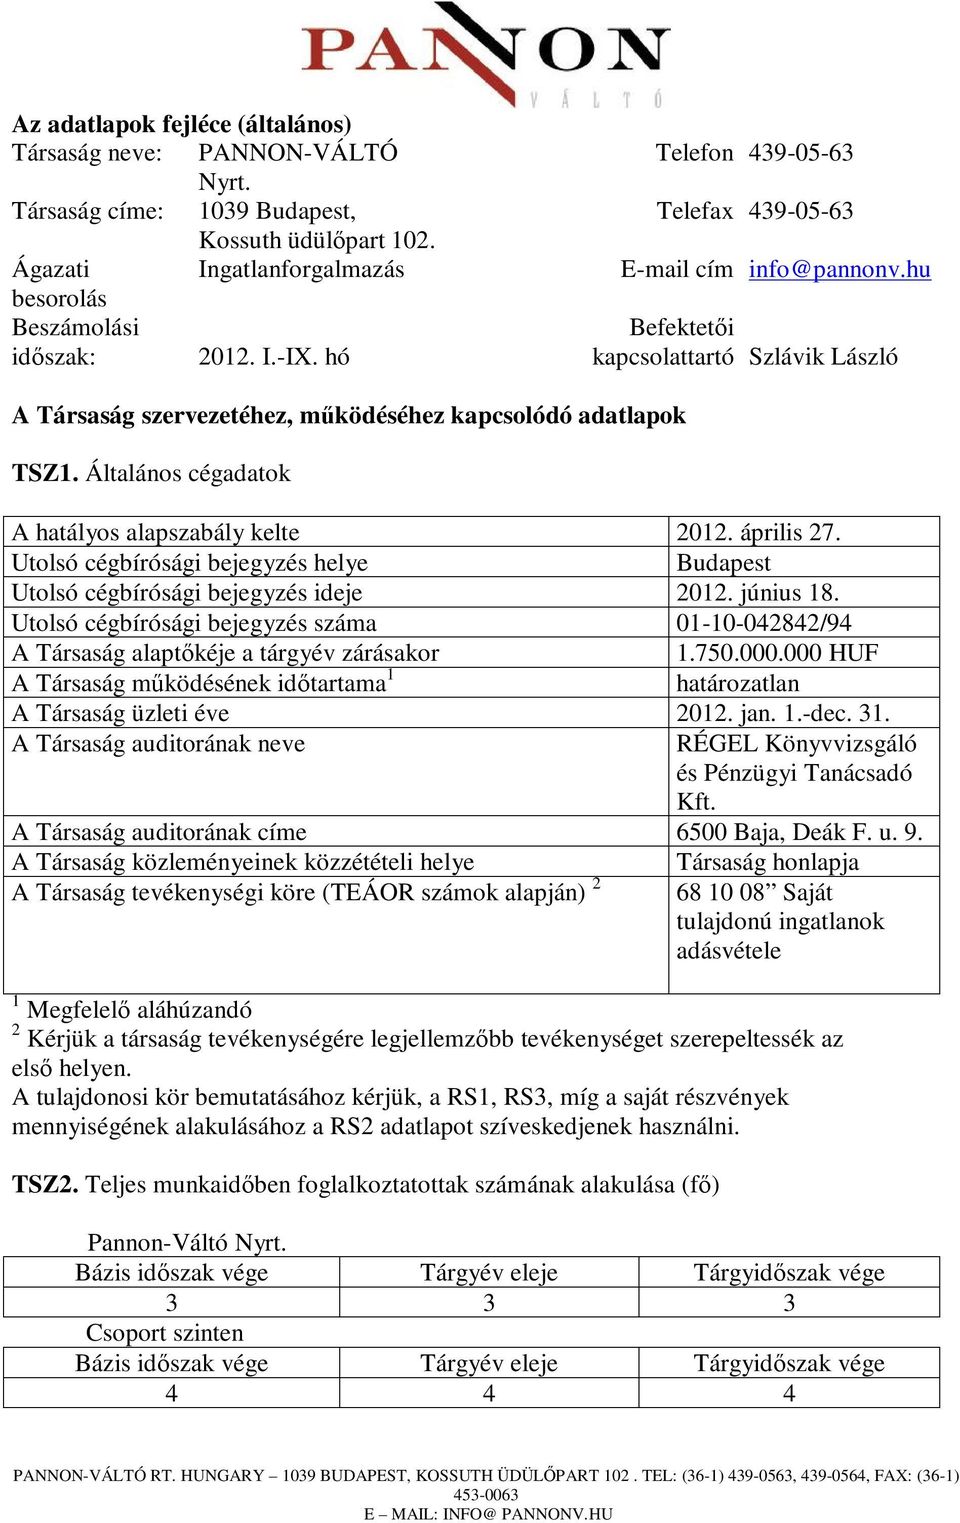 Általános cégadatok A hatályos alapszabály kelte 2012. április 27. Utolsó cégbírósági bejegyzés helye Budapest Utolsó cégbírósági bejegyzés ideje 2012. június 18.